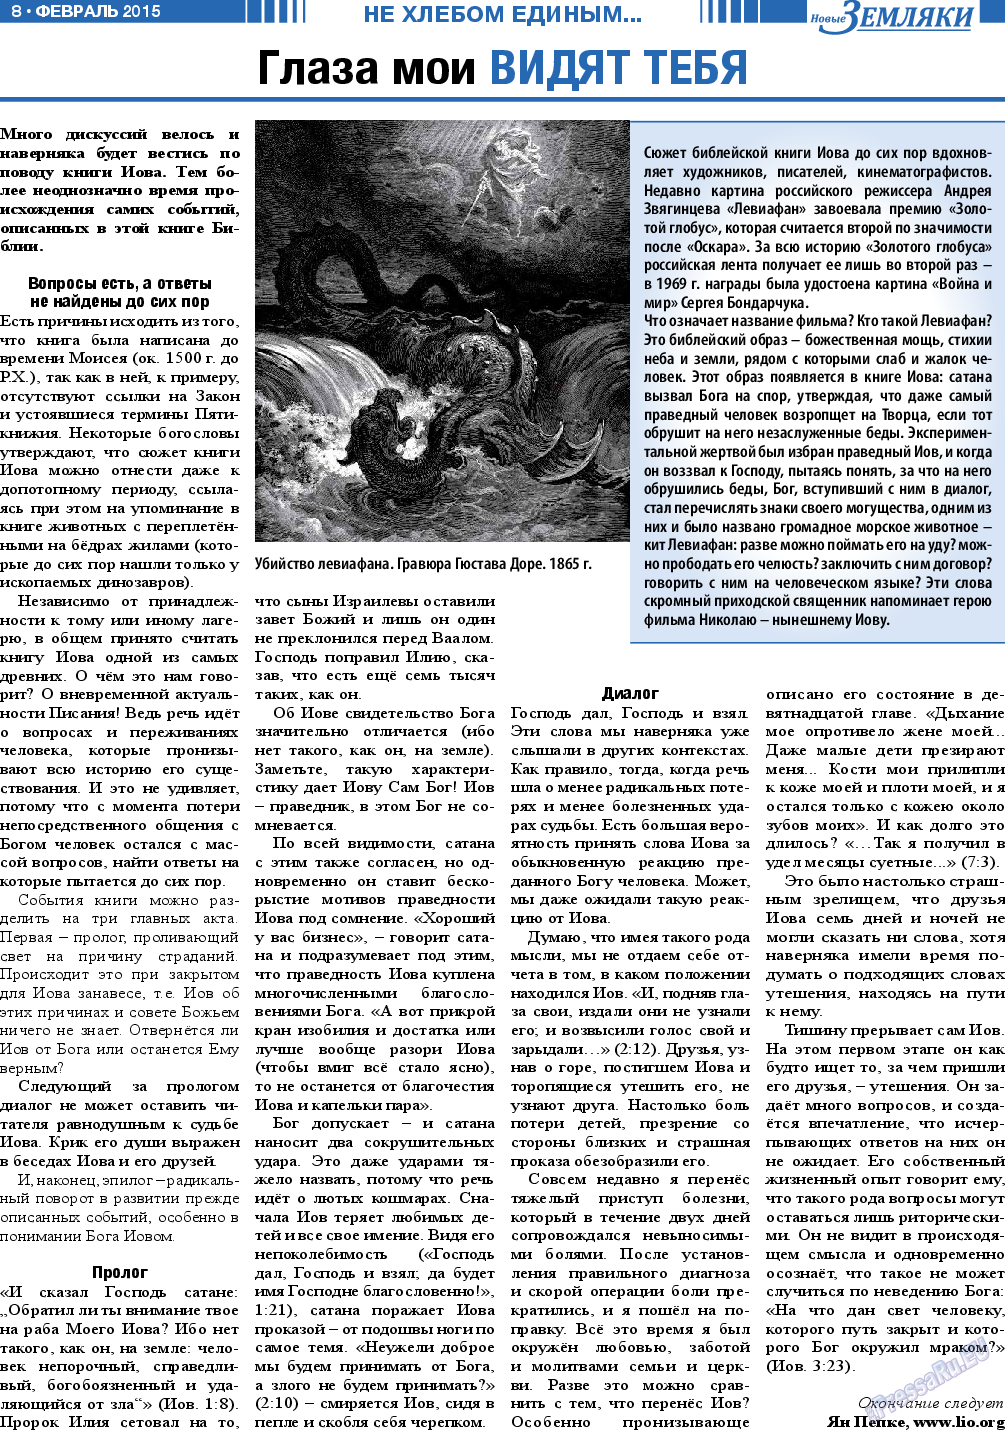 Новые Земляки (газета). 2015 год, номер 2, стр. 8